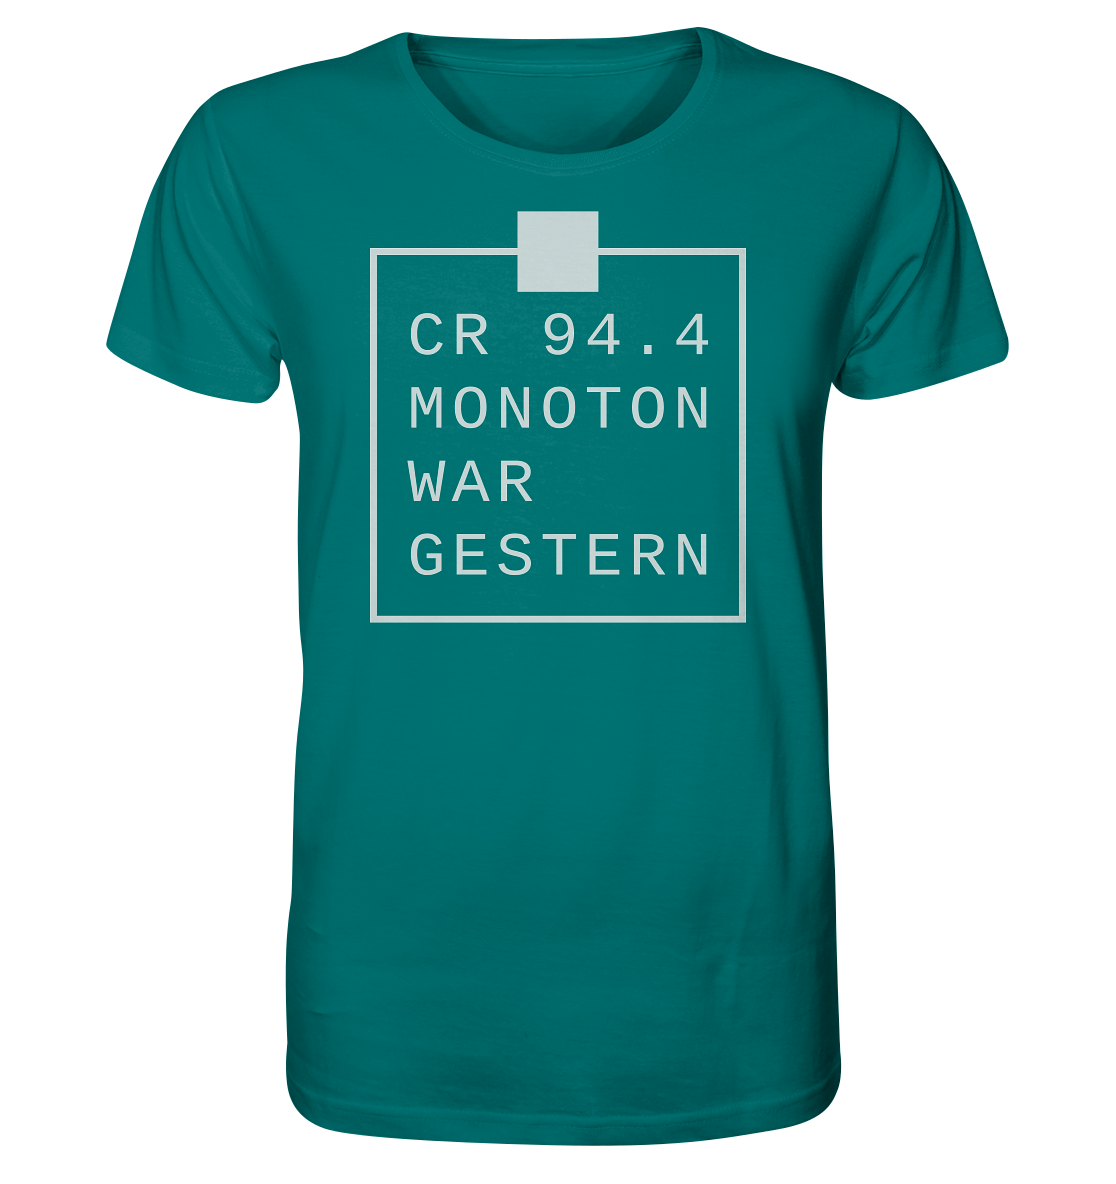 CR 94.4 monoton war gestern - Organic Shirt